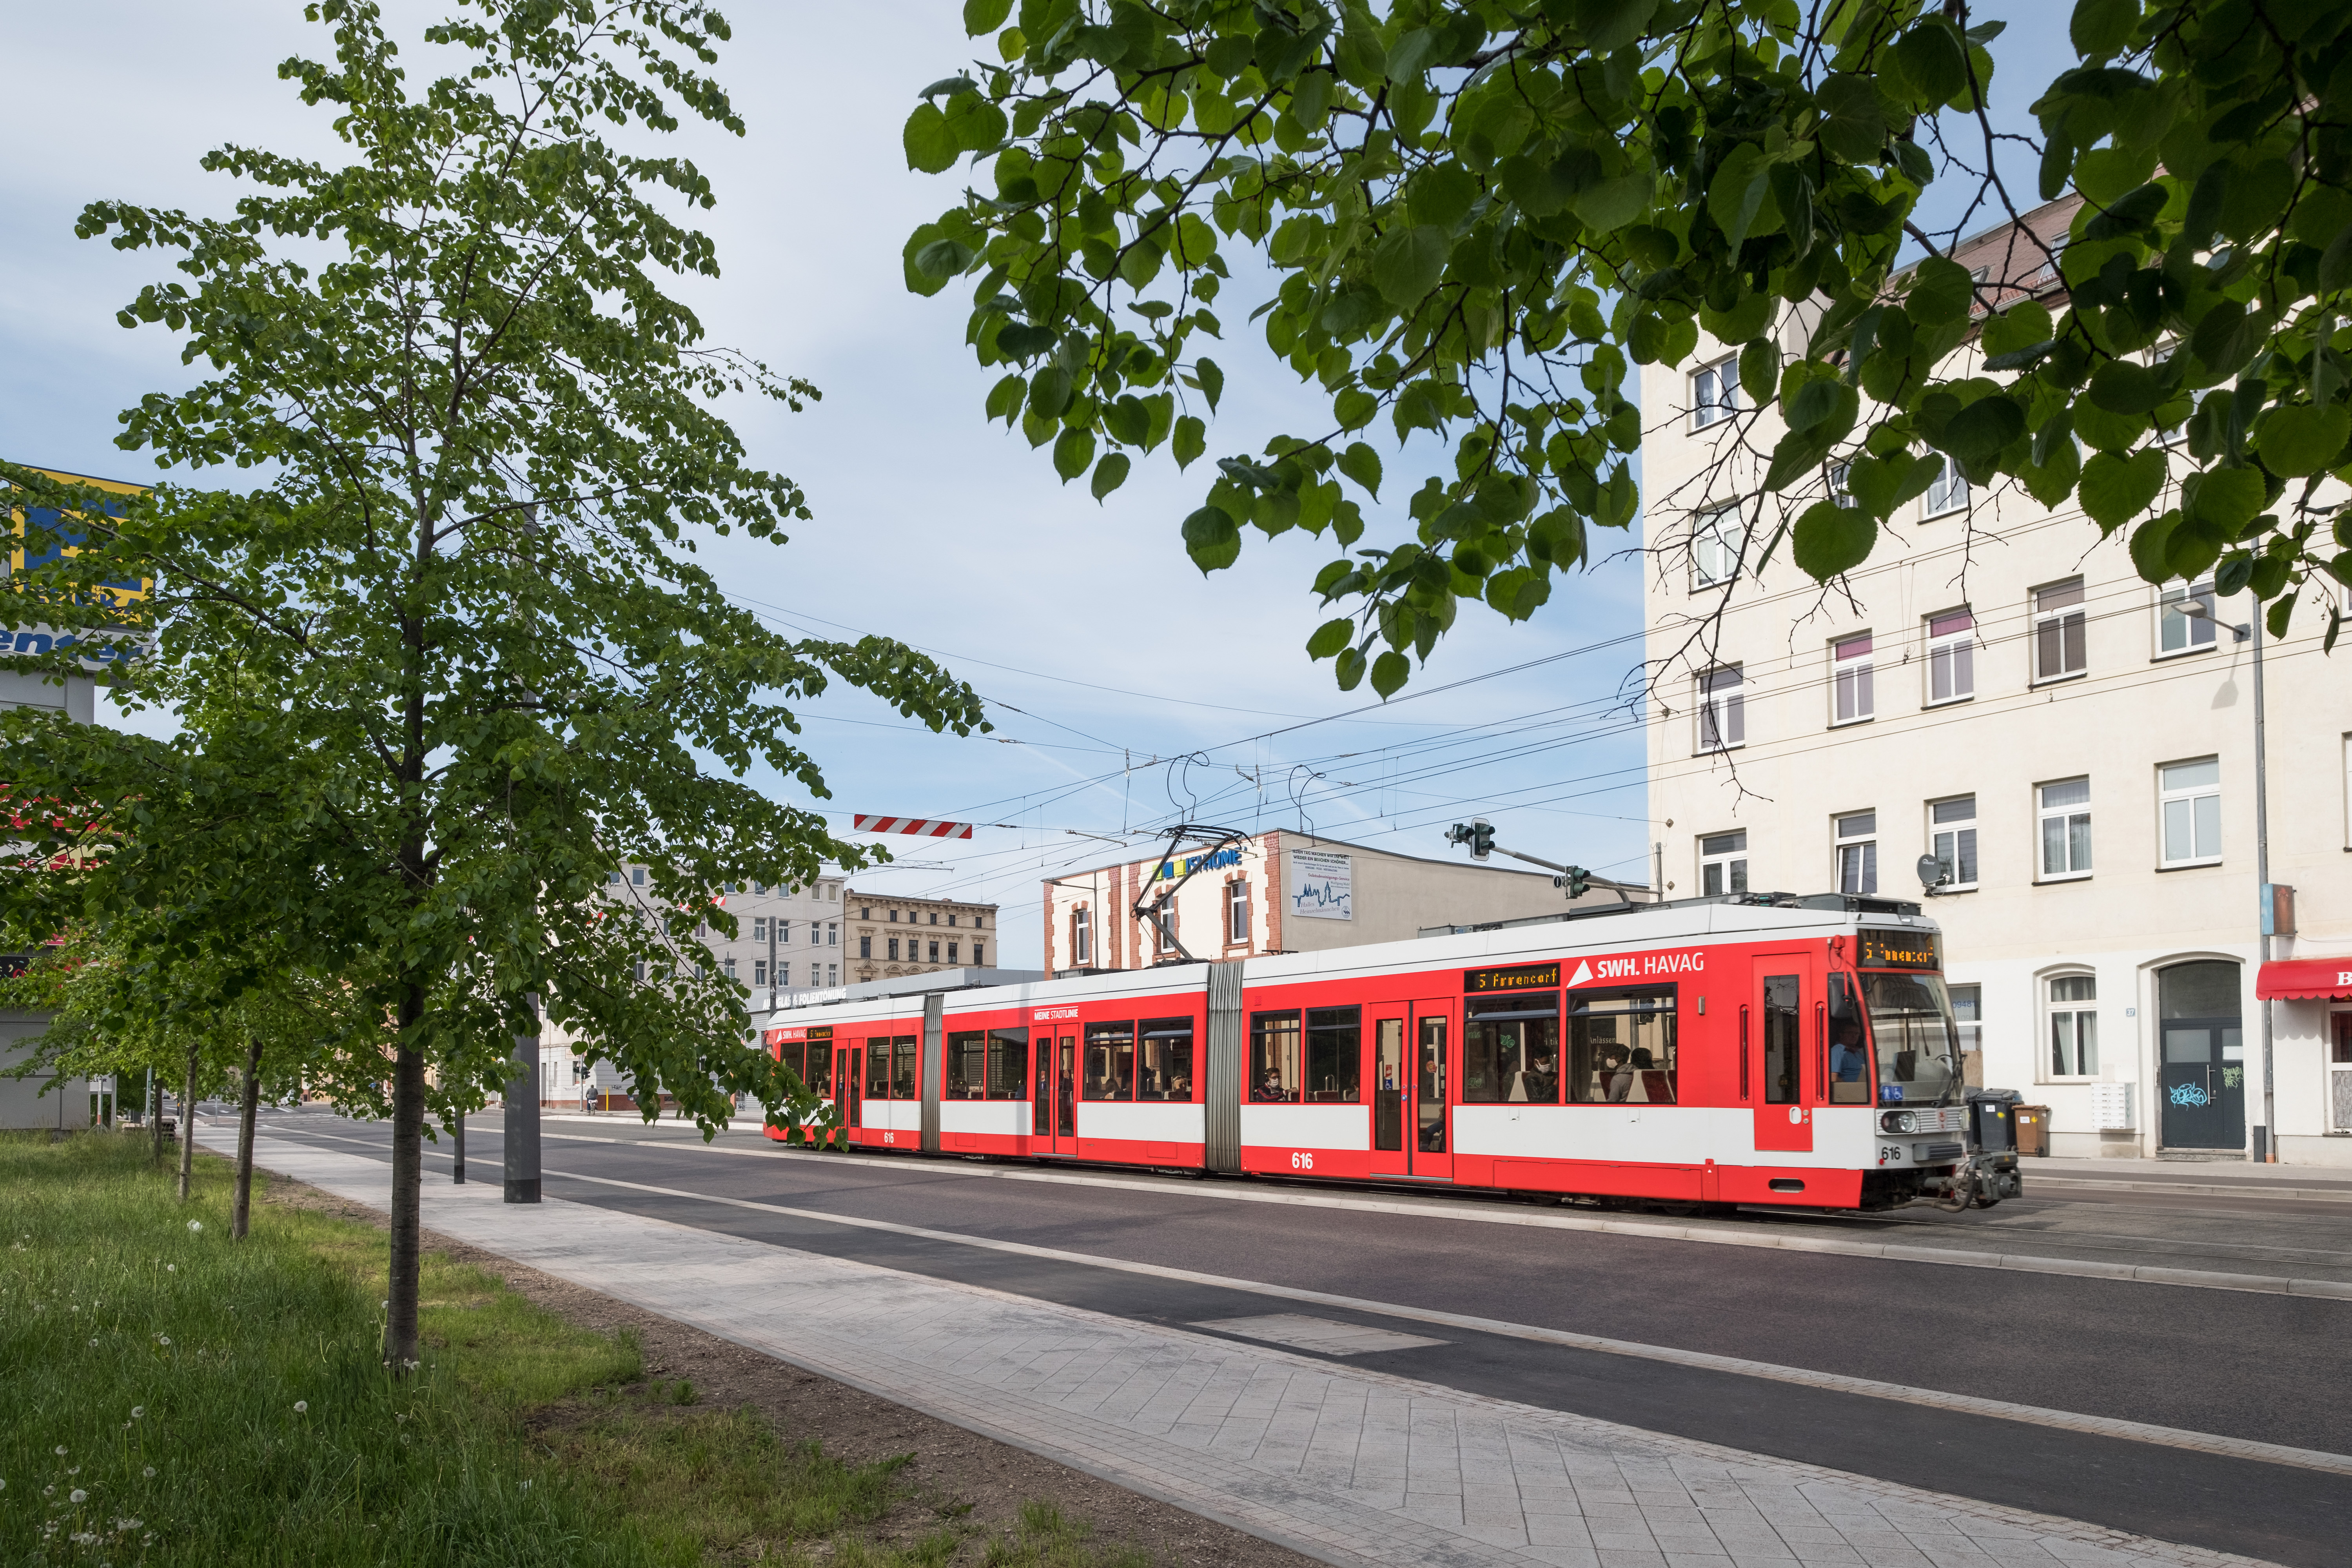 Das Foto zeigt eine Straße in dessen Mitte leicht erhöht eine Straßenbahntrasse liegt. Darauf fährt eine rote Straßenbahn der HAVAG. Rechts und links der Straße sind helle Häuser und im Vordergrund Bäume abgebildet.